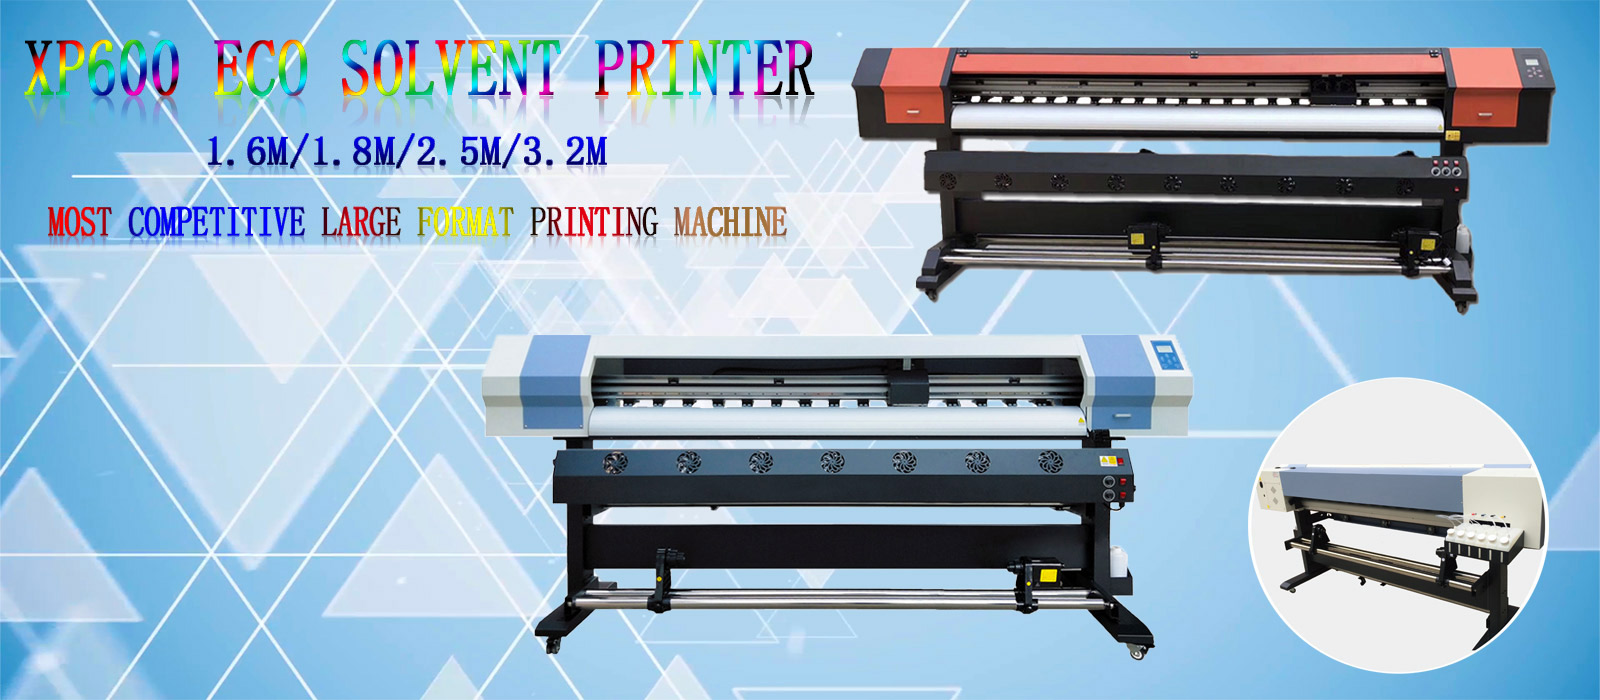 XP600 Eco Solvent Printer